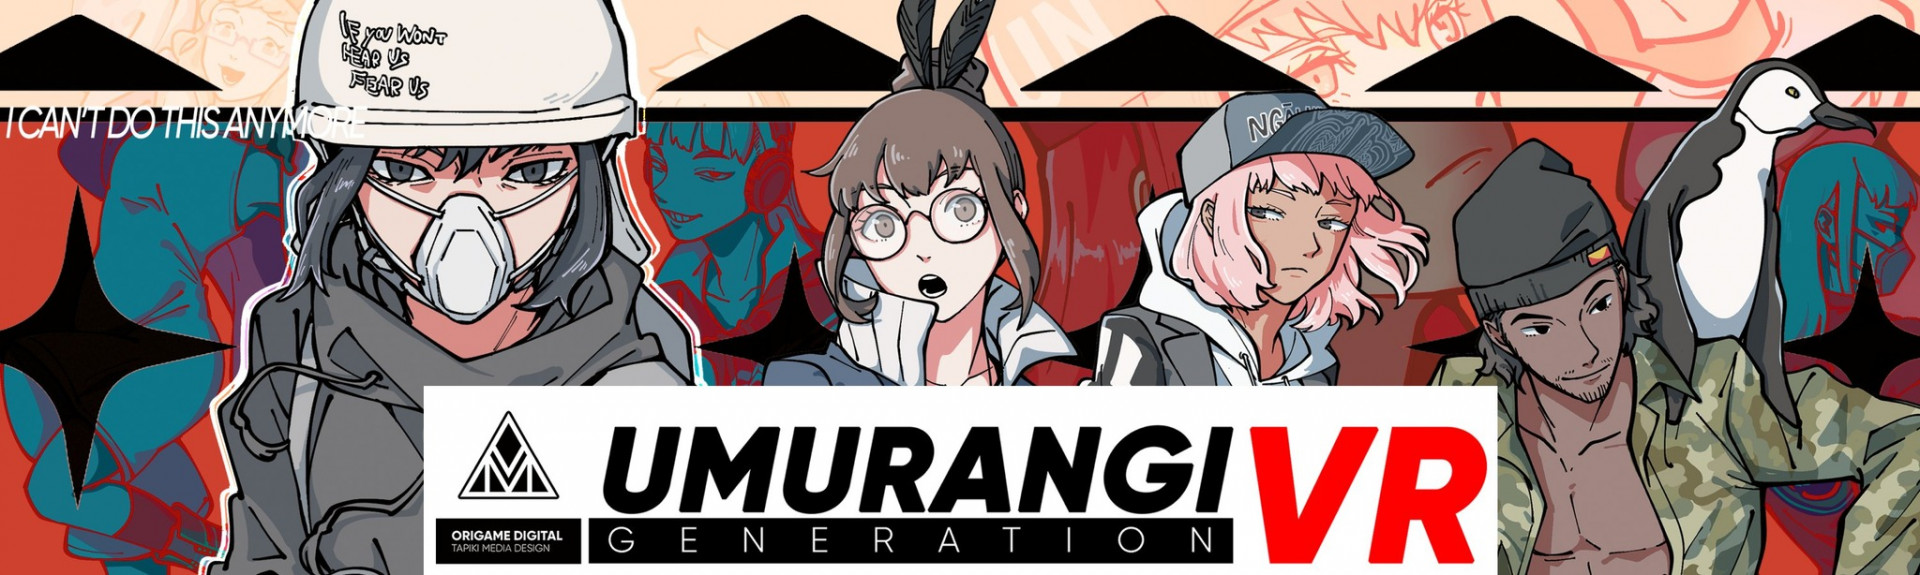 Umurangi Generation VR, juego fotográfico para Quest y PSVR2